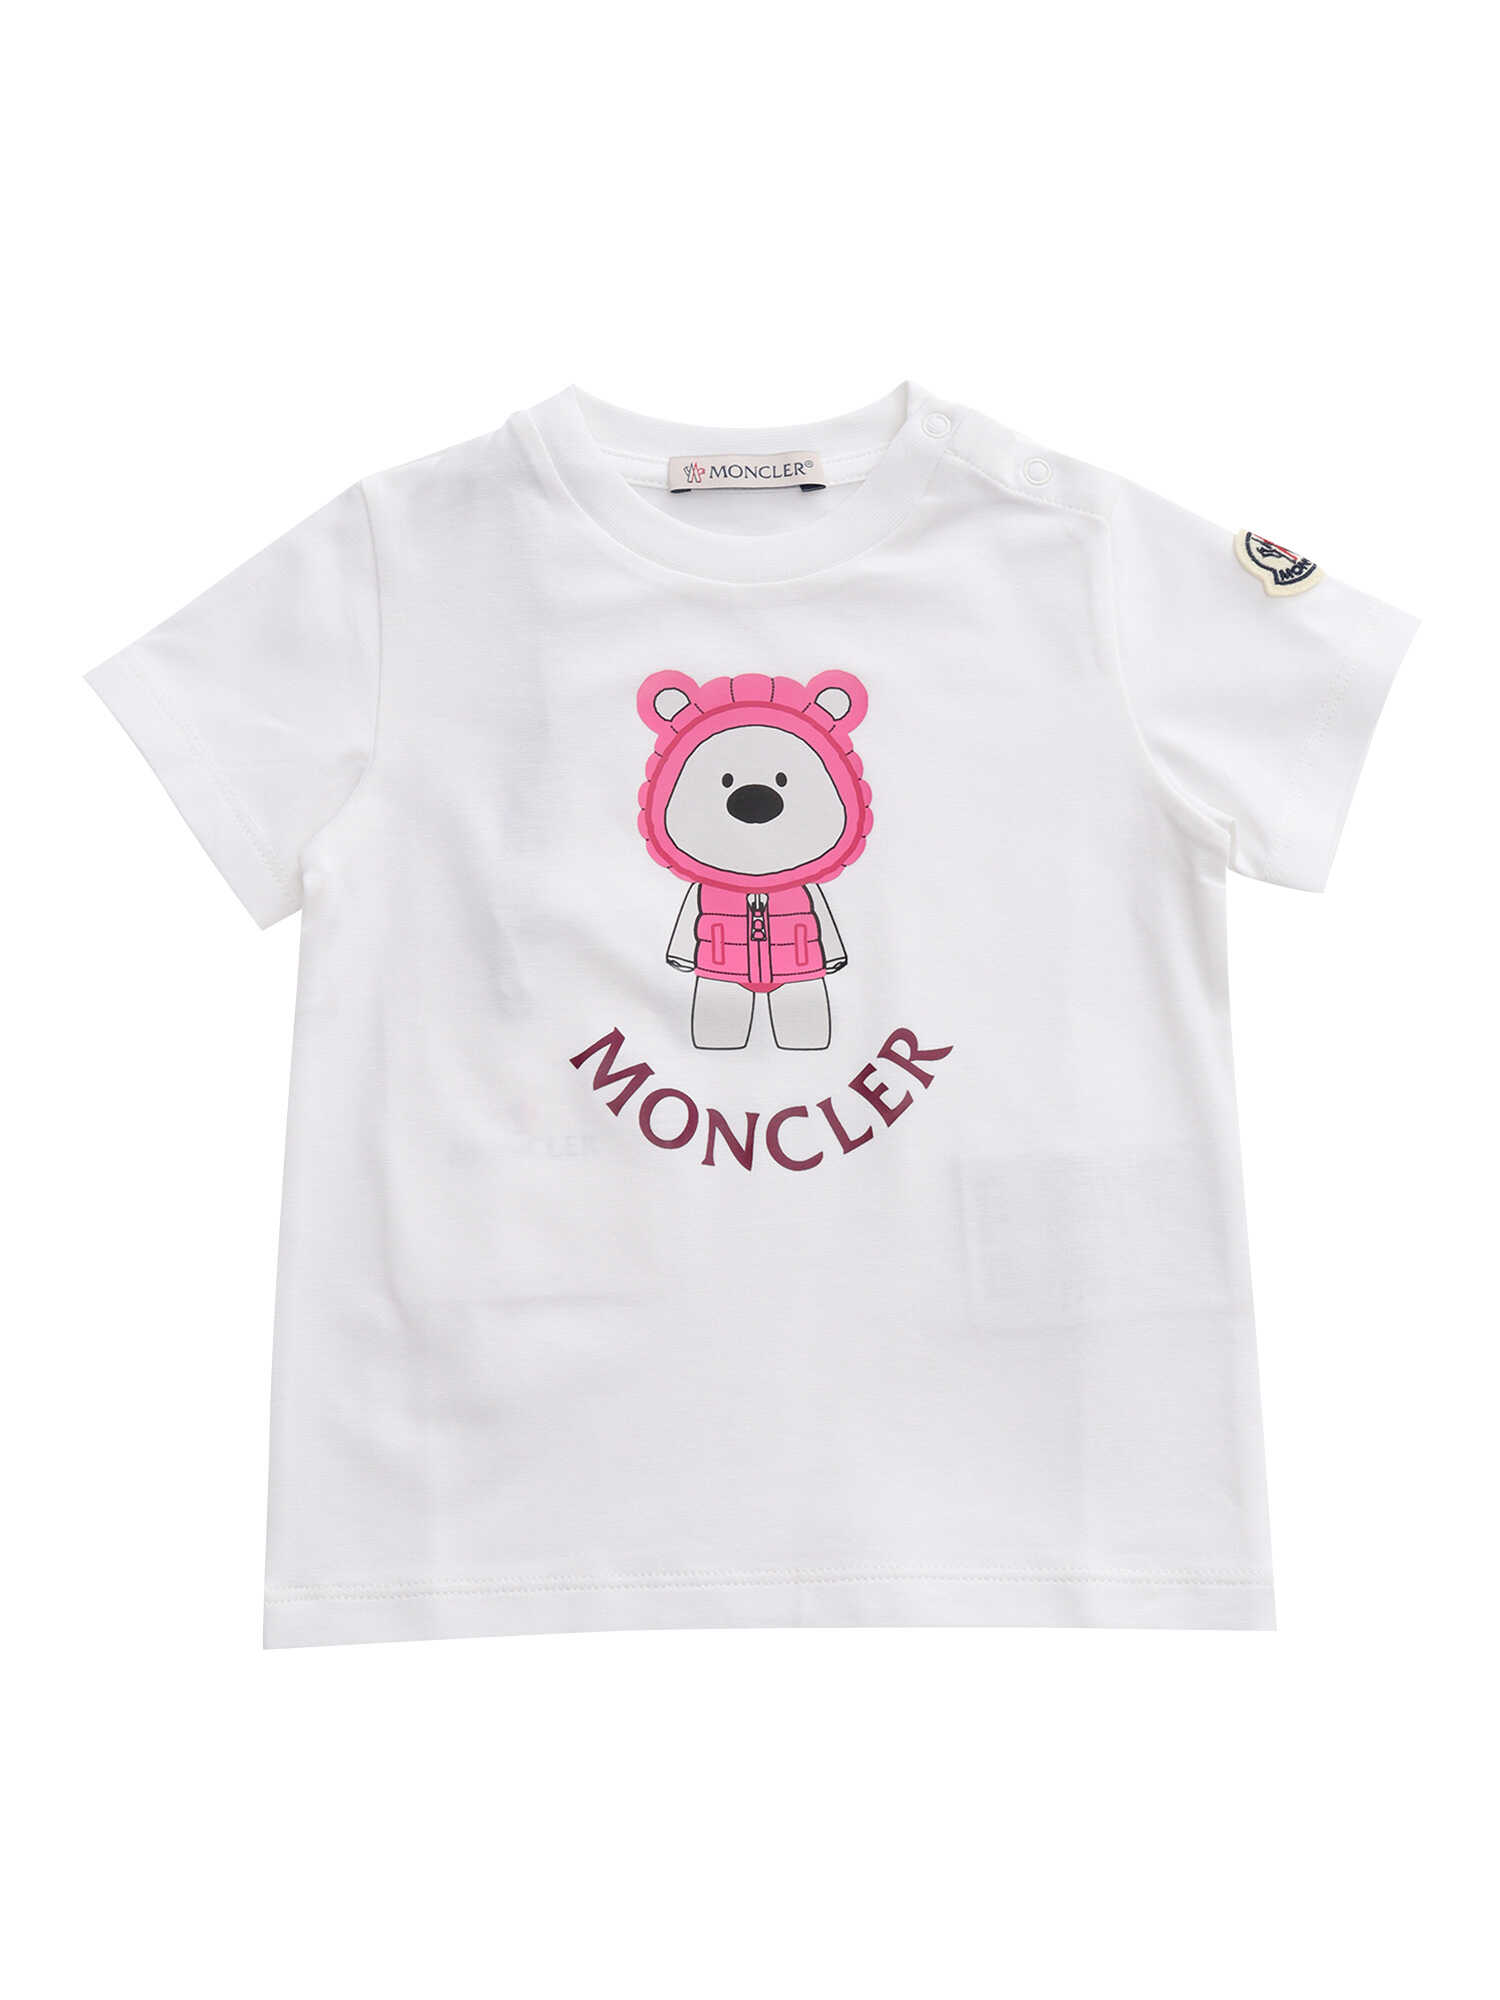 Poze Moncler Bear T-Shirt White